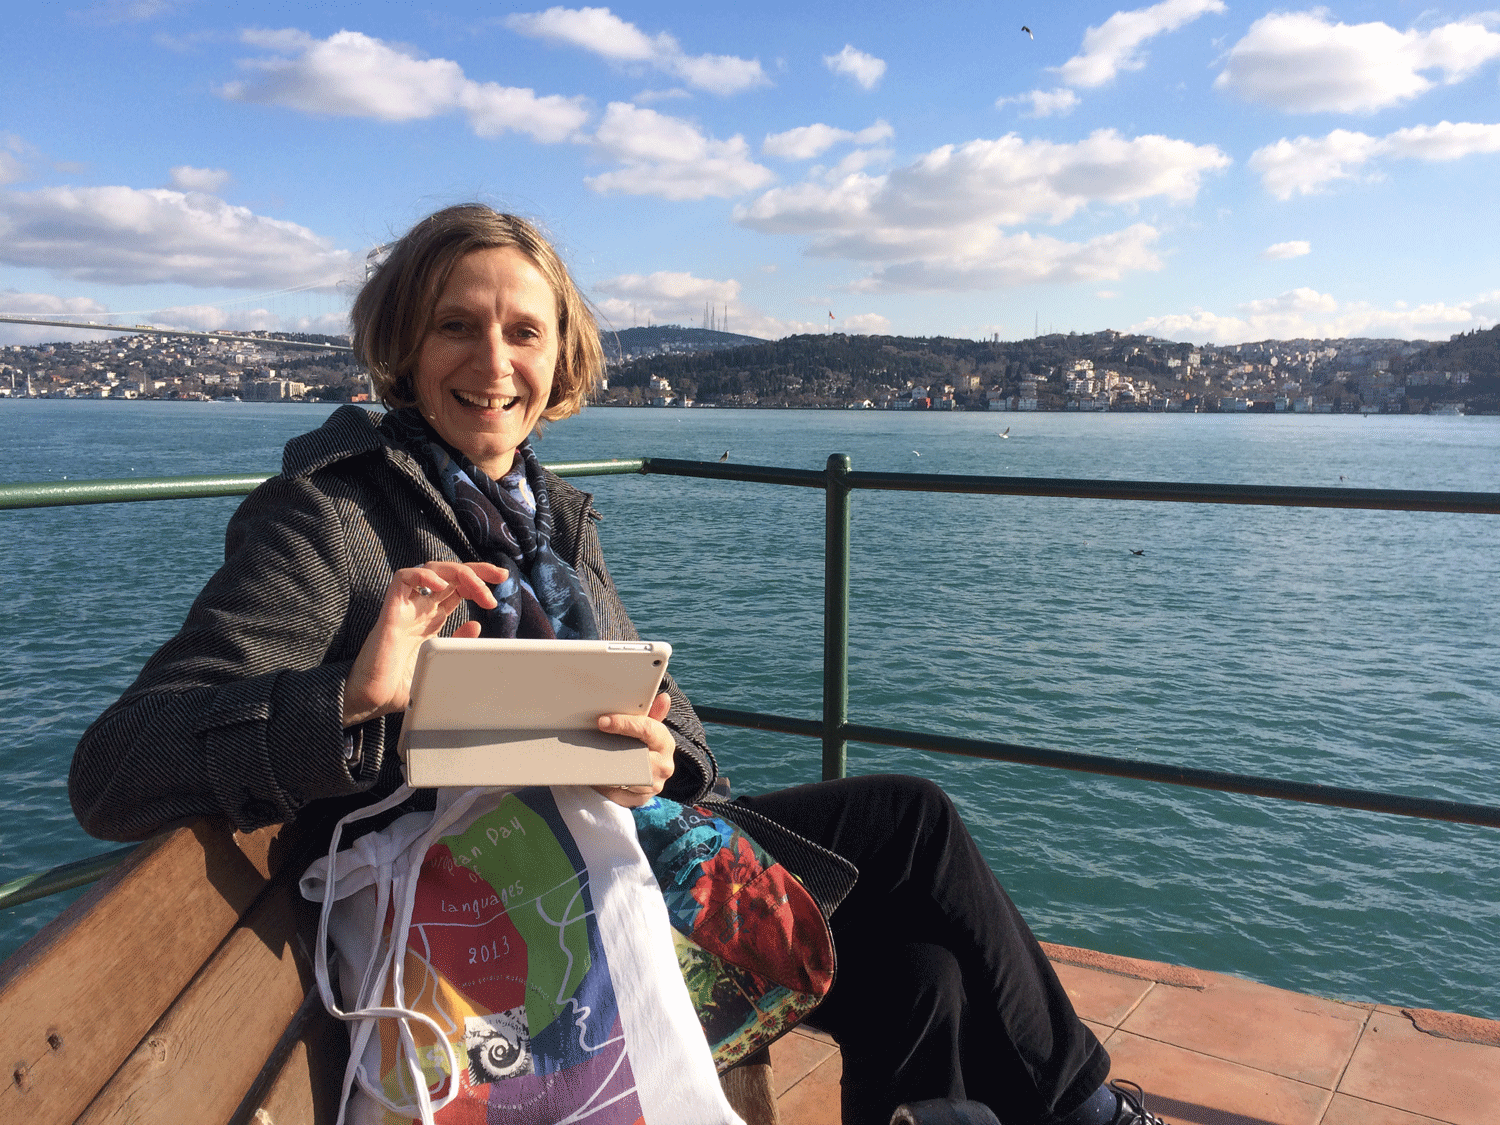 Maryse Pechoux consulte ses mails sur une des terrasses de l’université Galatasaray, face au Bosphore